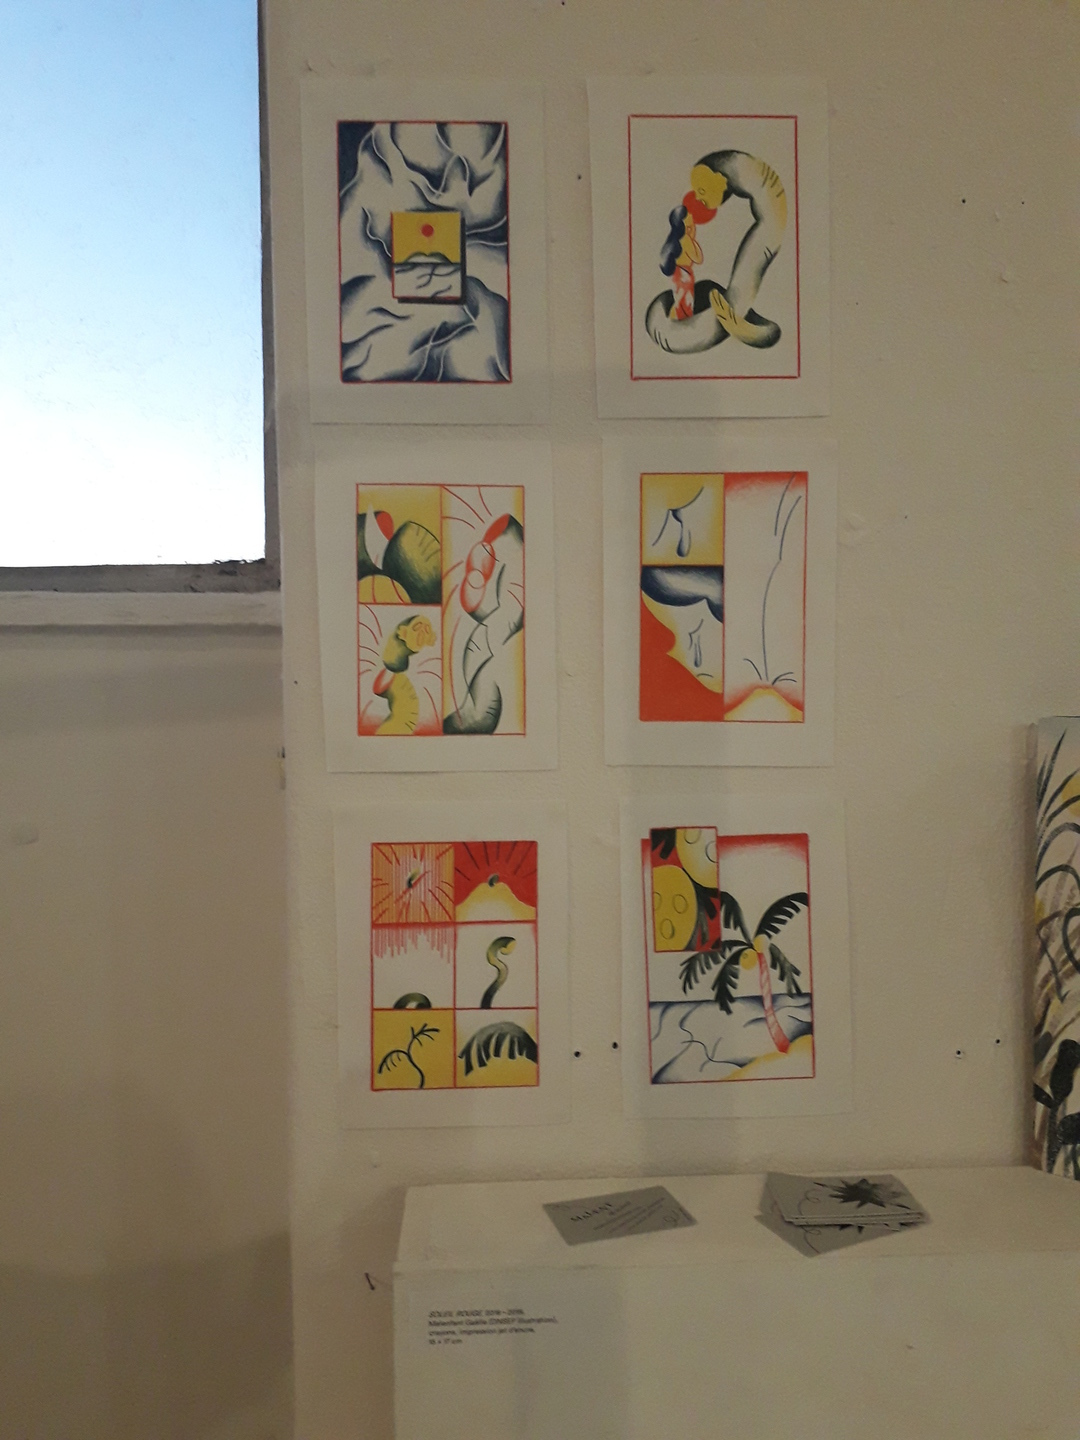 Image 2 : Illustrations à dominante orange, jaune et vert accrochées au mur